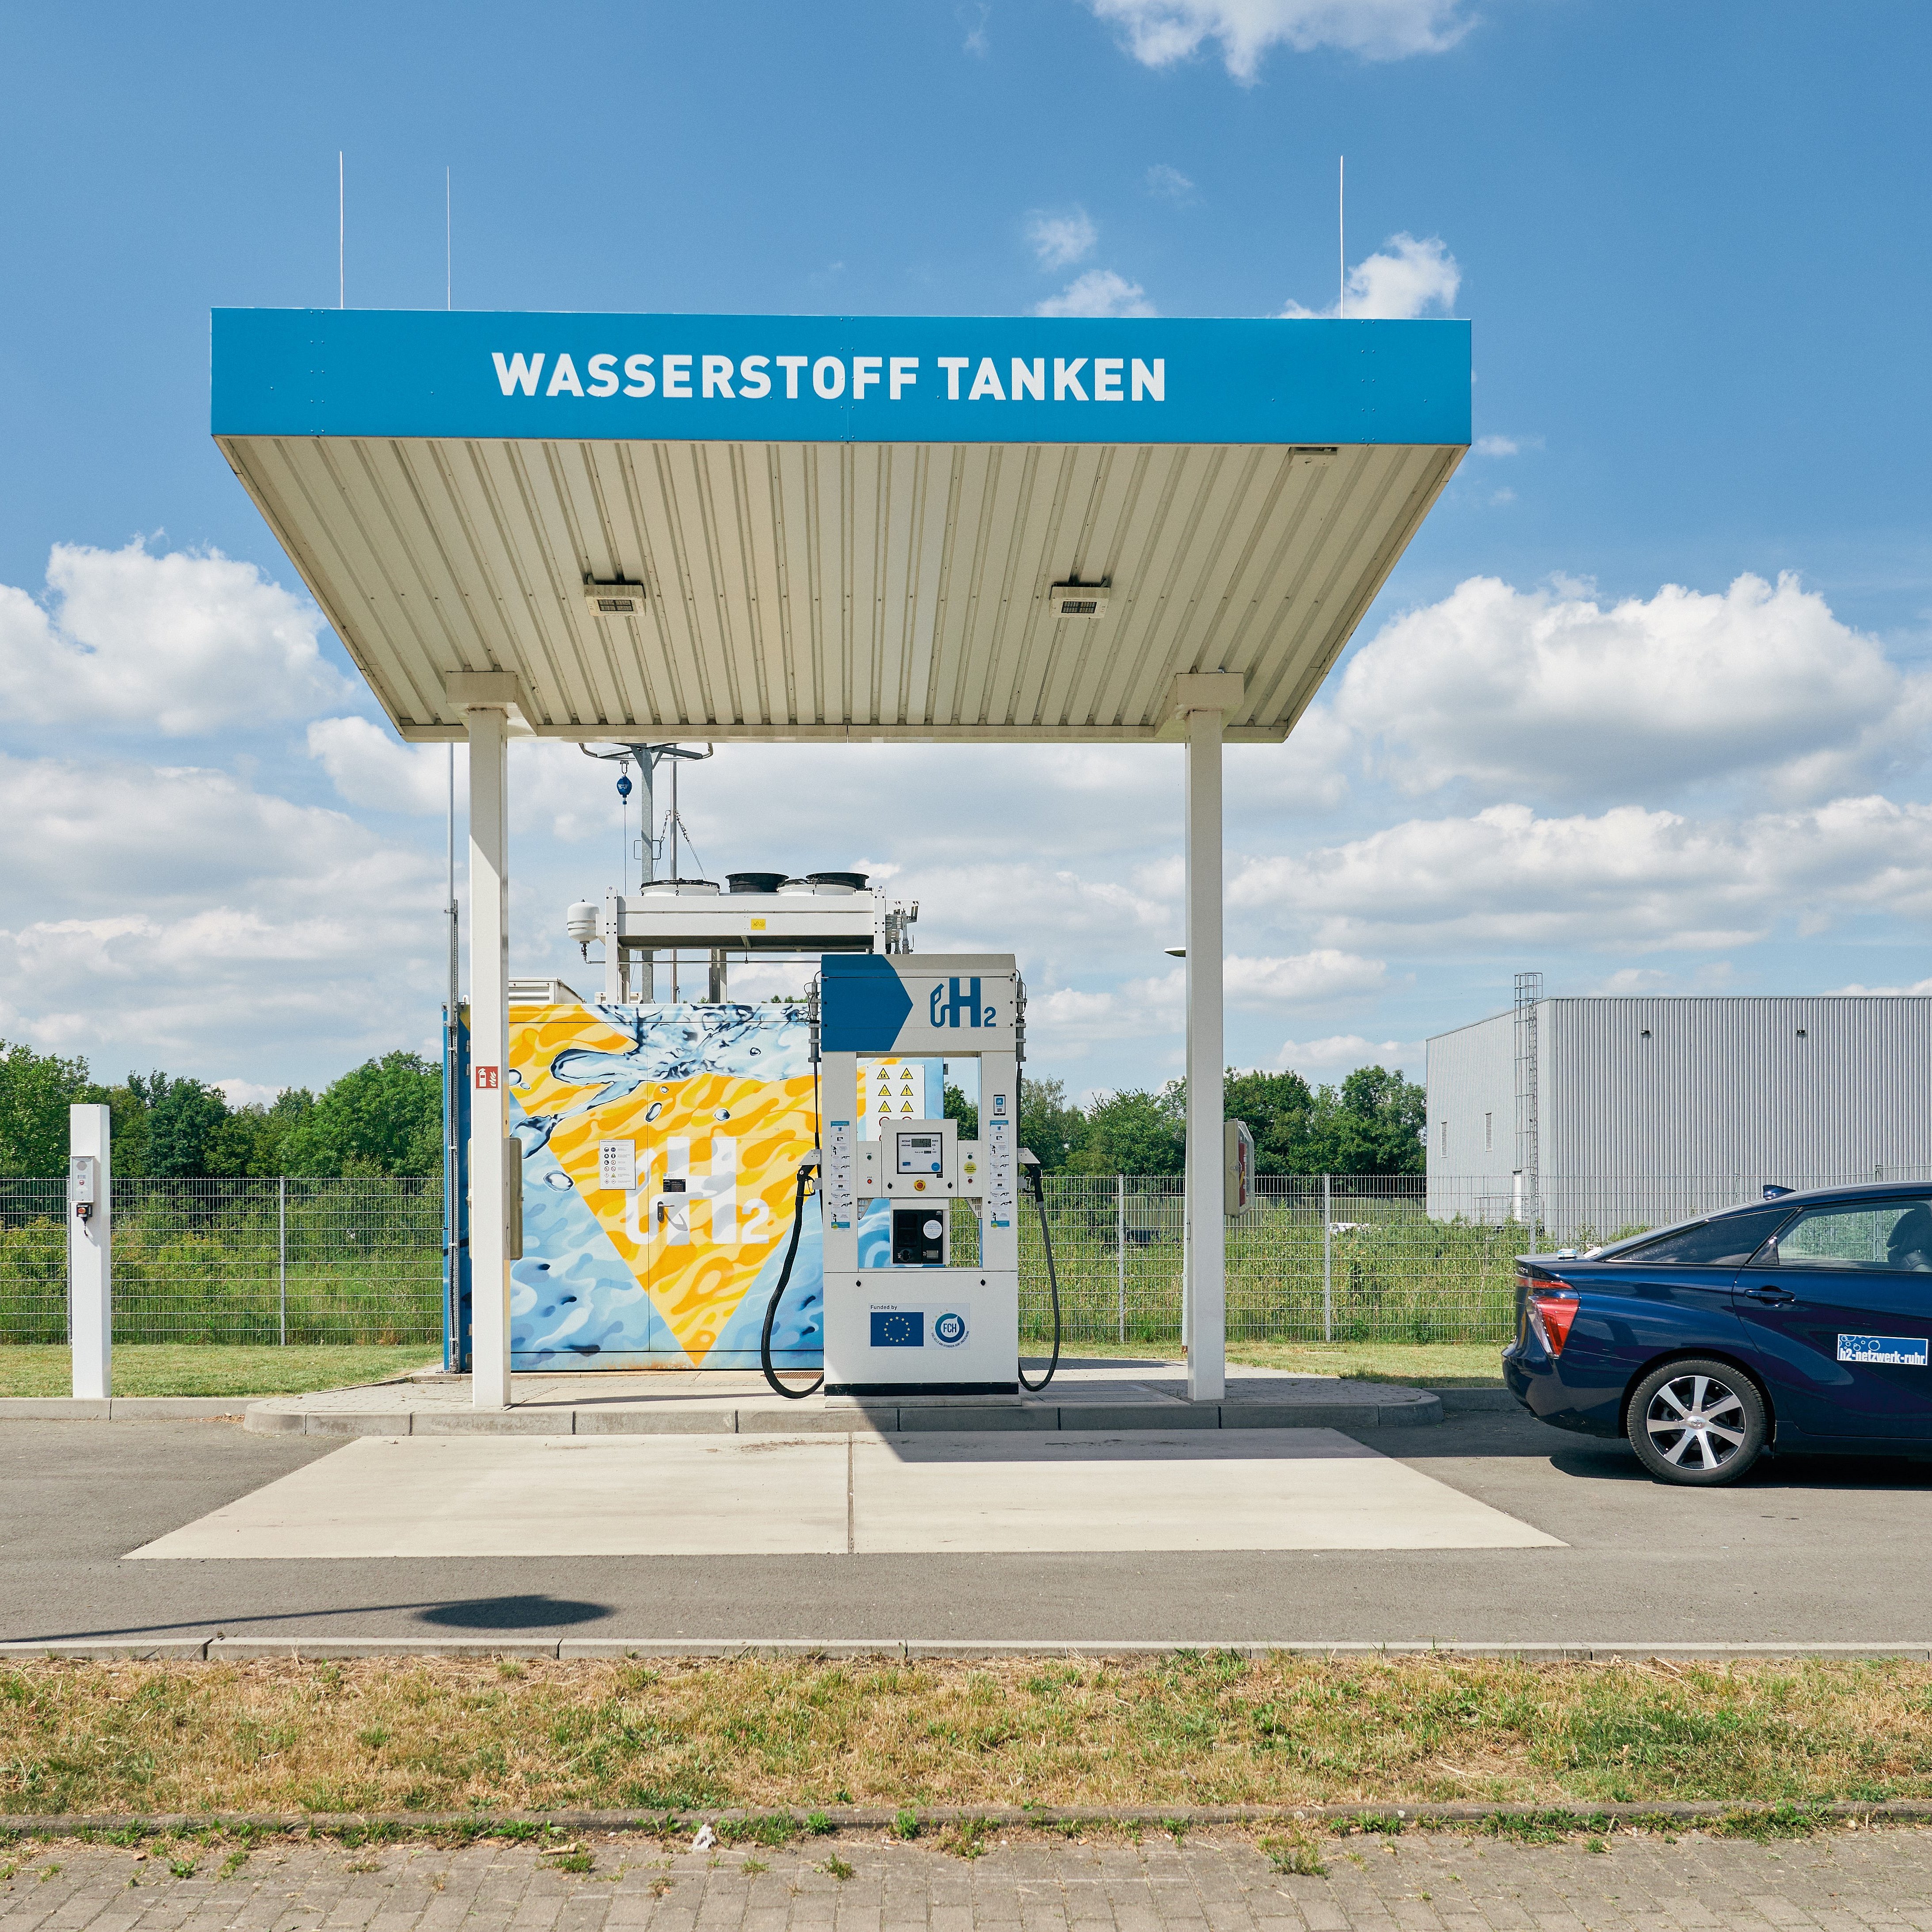 Abgebildet ist eine Wasserstofftankstelle auf der der Schriftzug Wasserstoff tanken abgebildet ist. Die Tankstelle wird von einem getanken Wasserstoffauto verlassen.